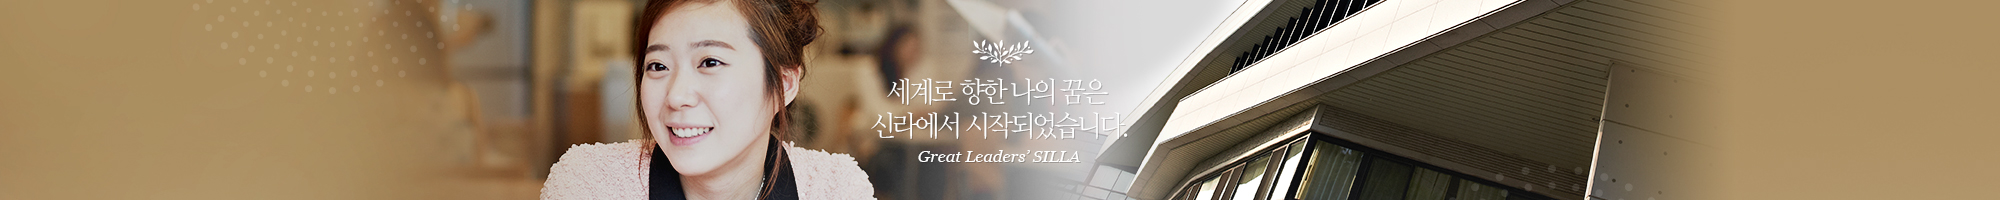 세계로 향한 나의 꿈은 신라에서 시작되었습니다. Great Leaders' SILLA